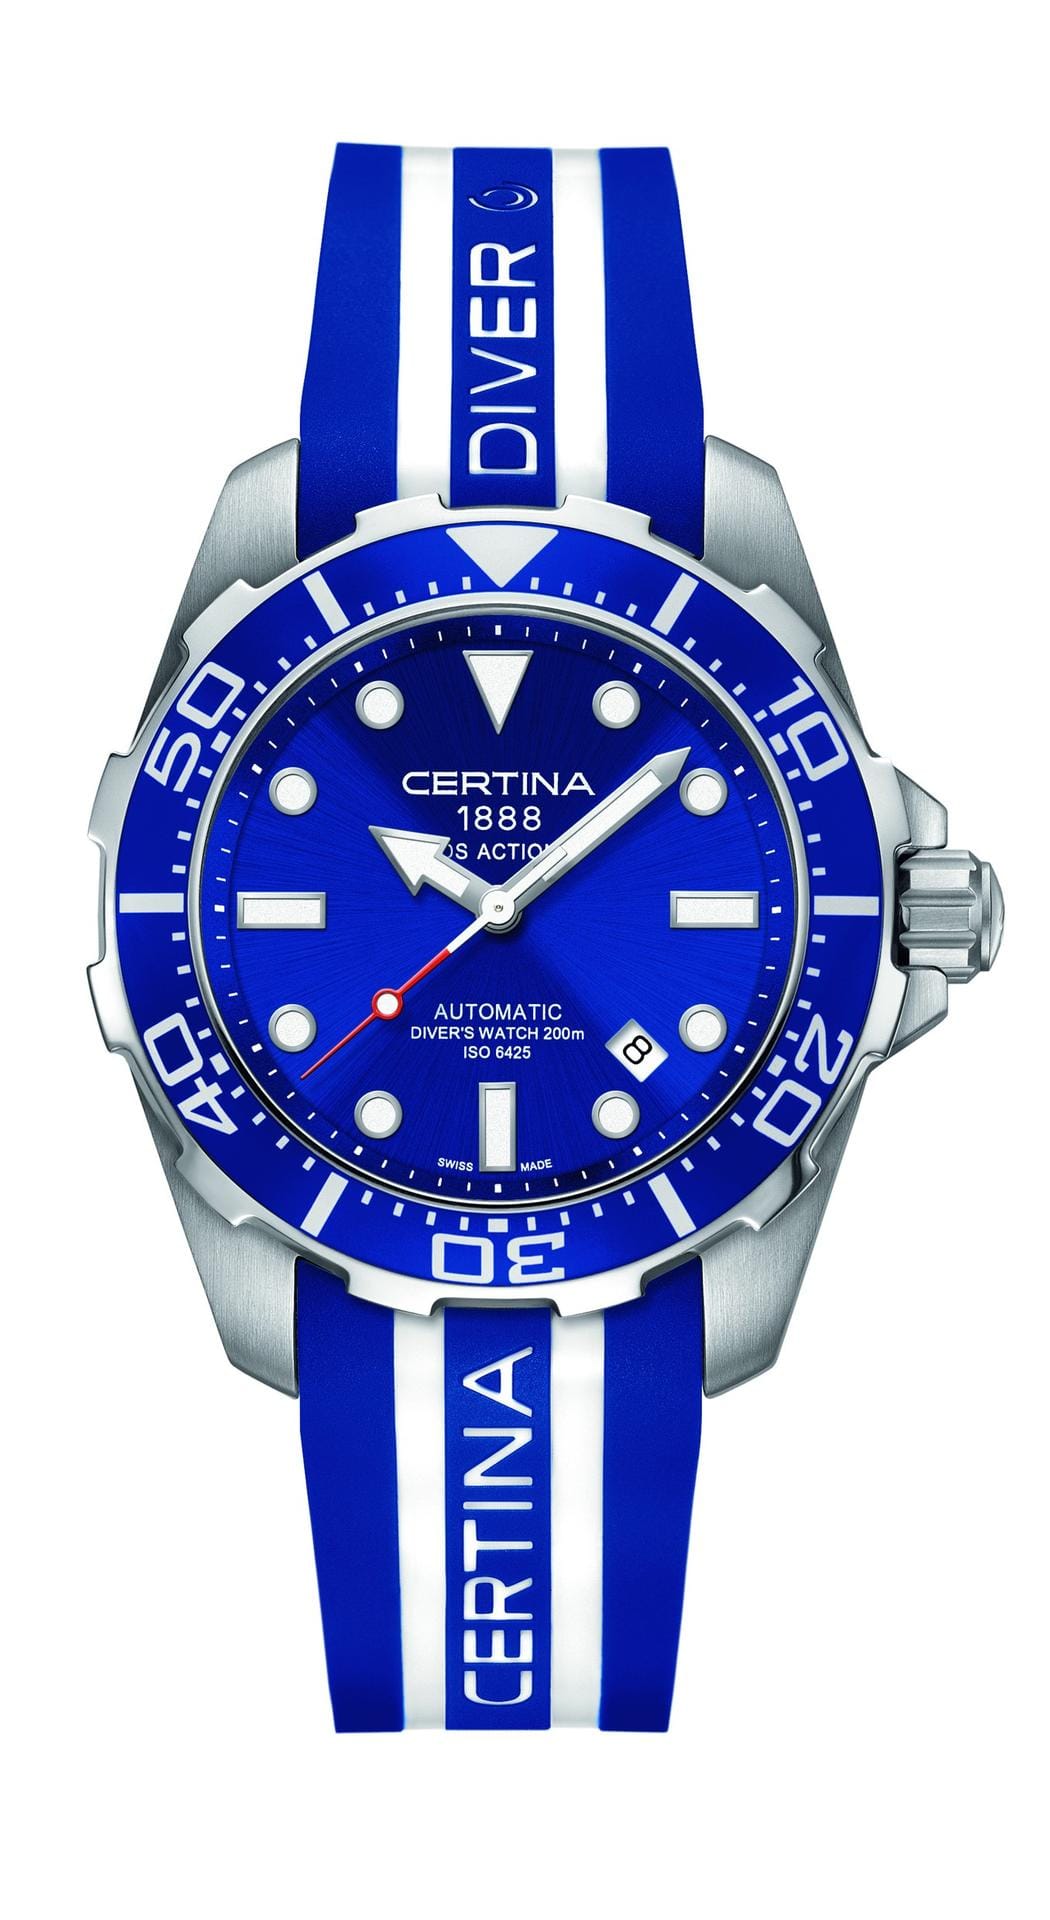 Von Certina gibt es die schicke Taucheruhr DS Action Diver für 770 Euro. Die Uhr ist bis zu einer Tiefe von 200 Metern wasserdicht.